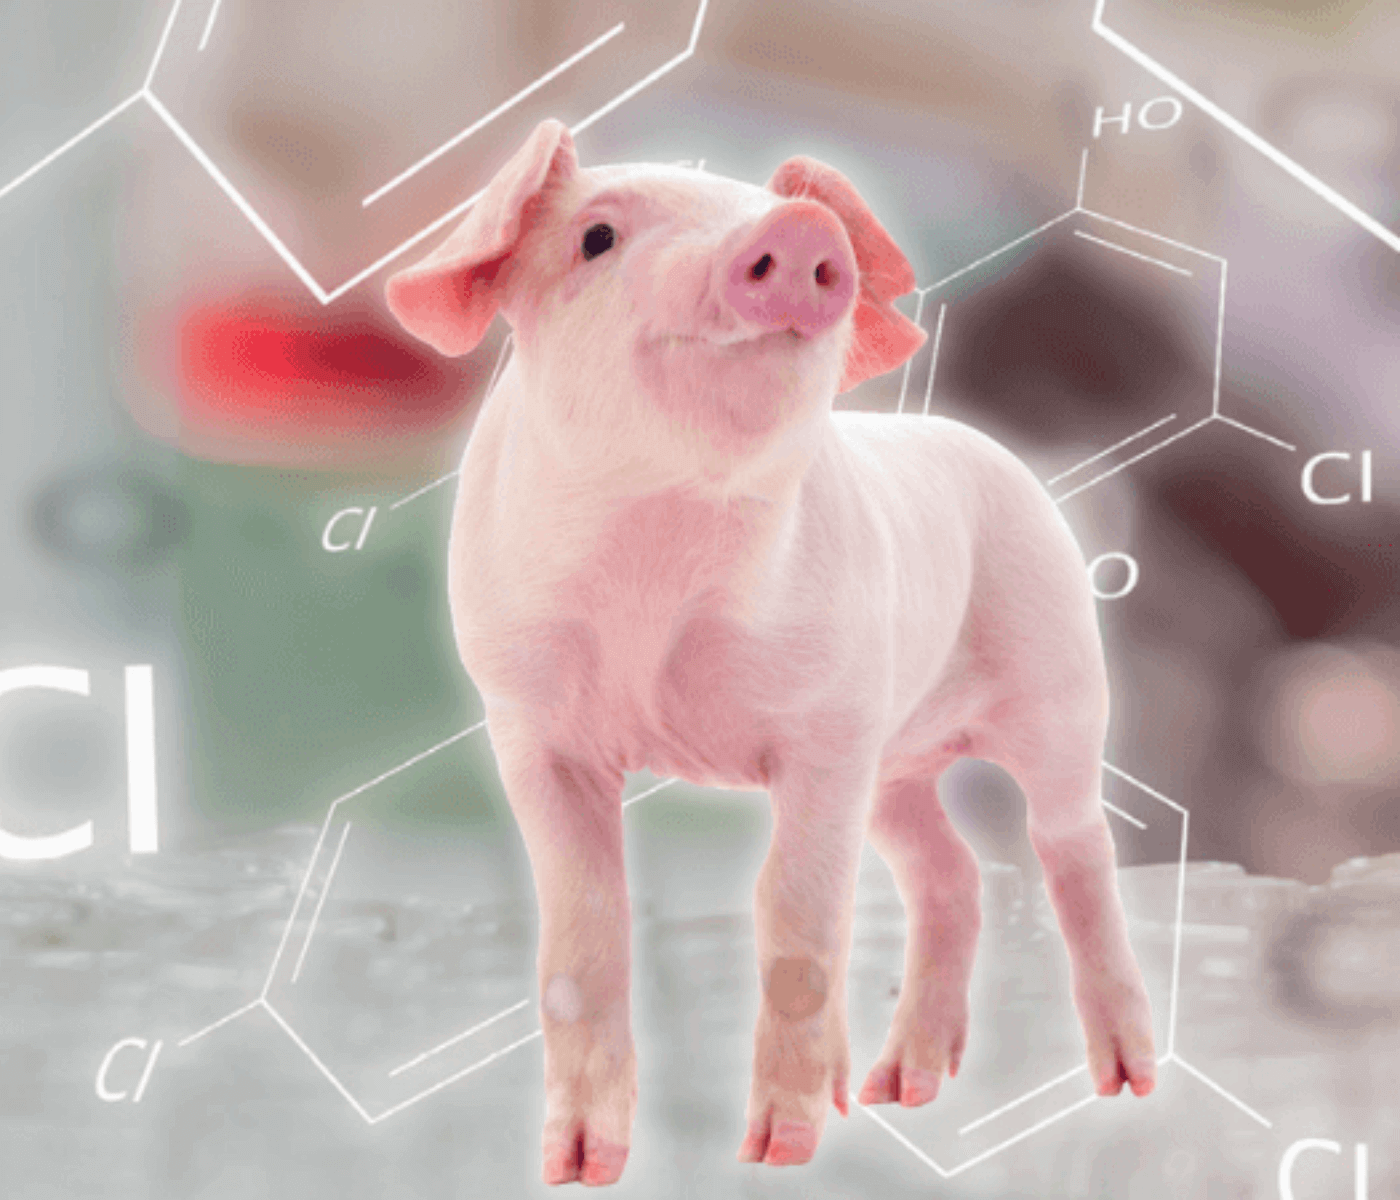 Novos métodos de detecção de resíduos antibióticos em animais vivos